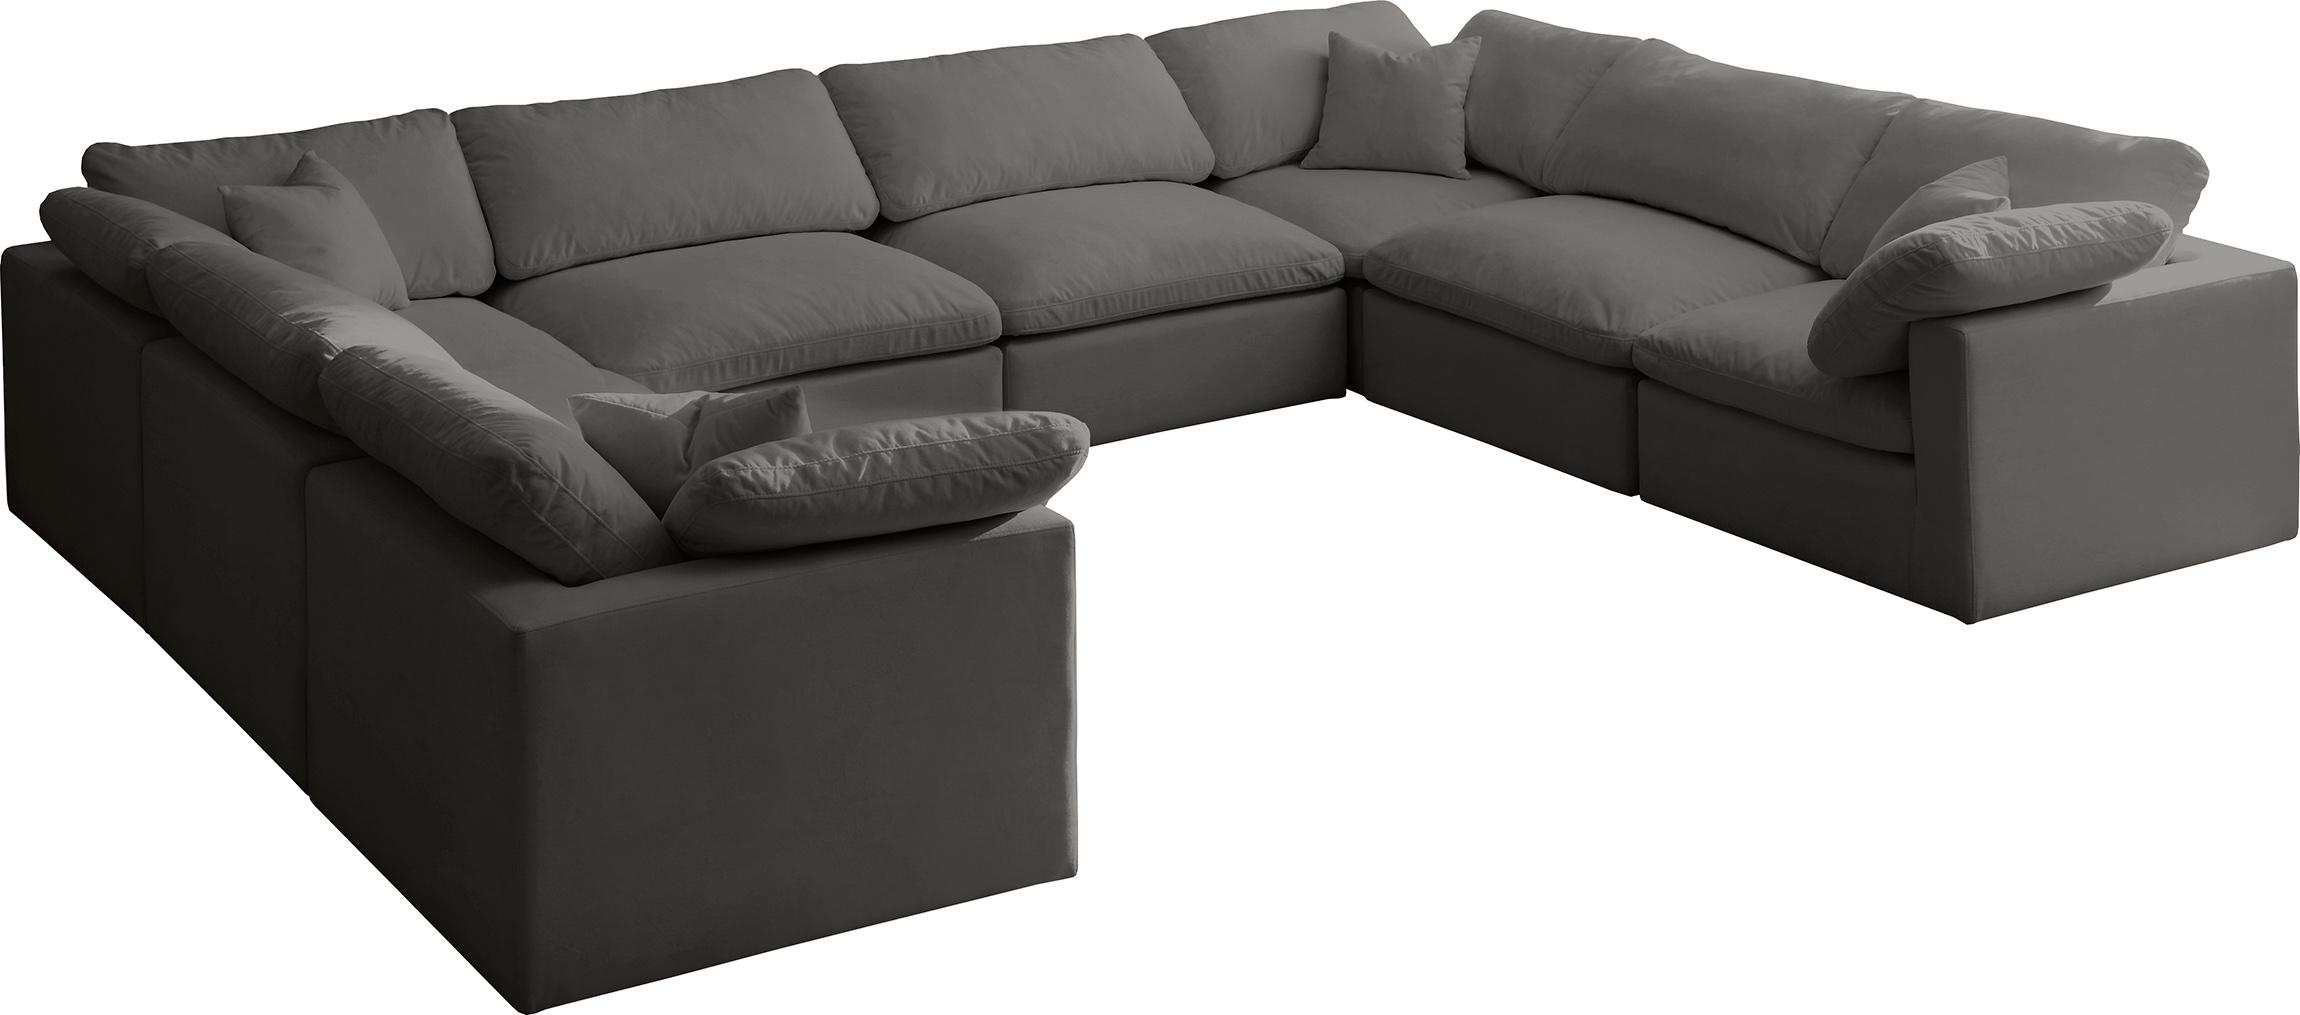 Soflex Cloud GREY Modular Sectional Sofa